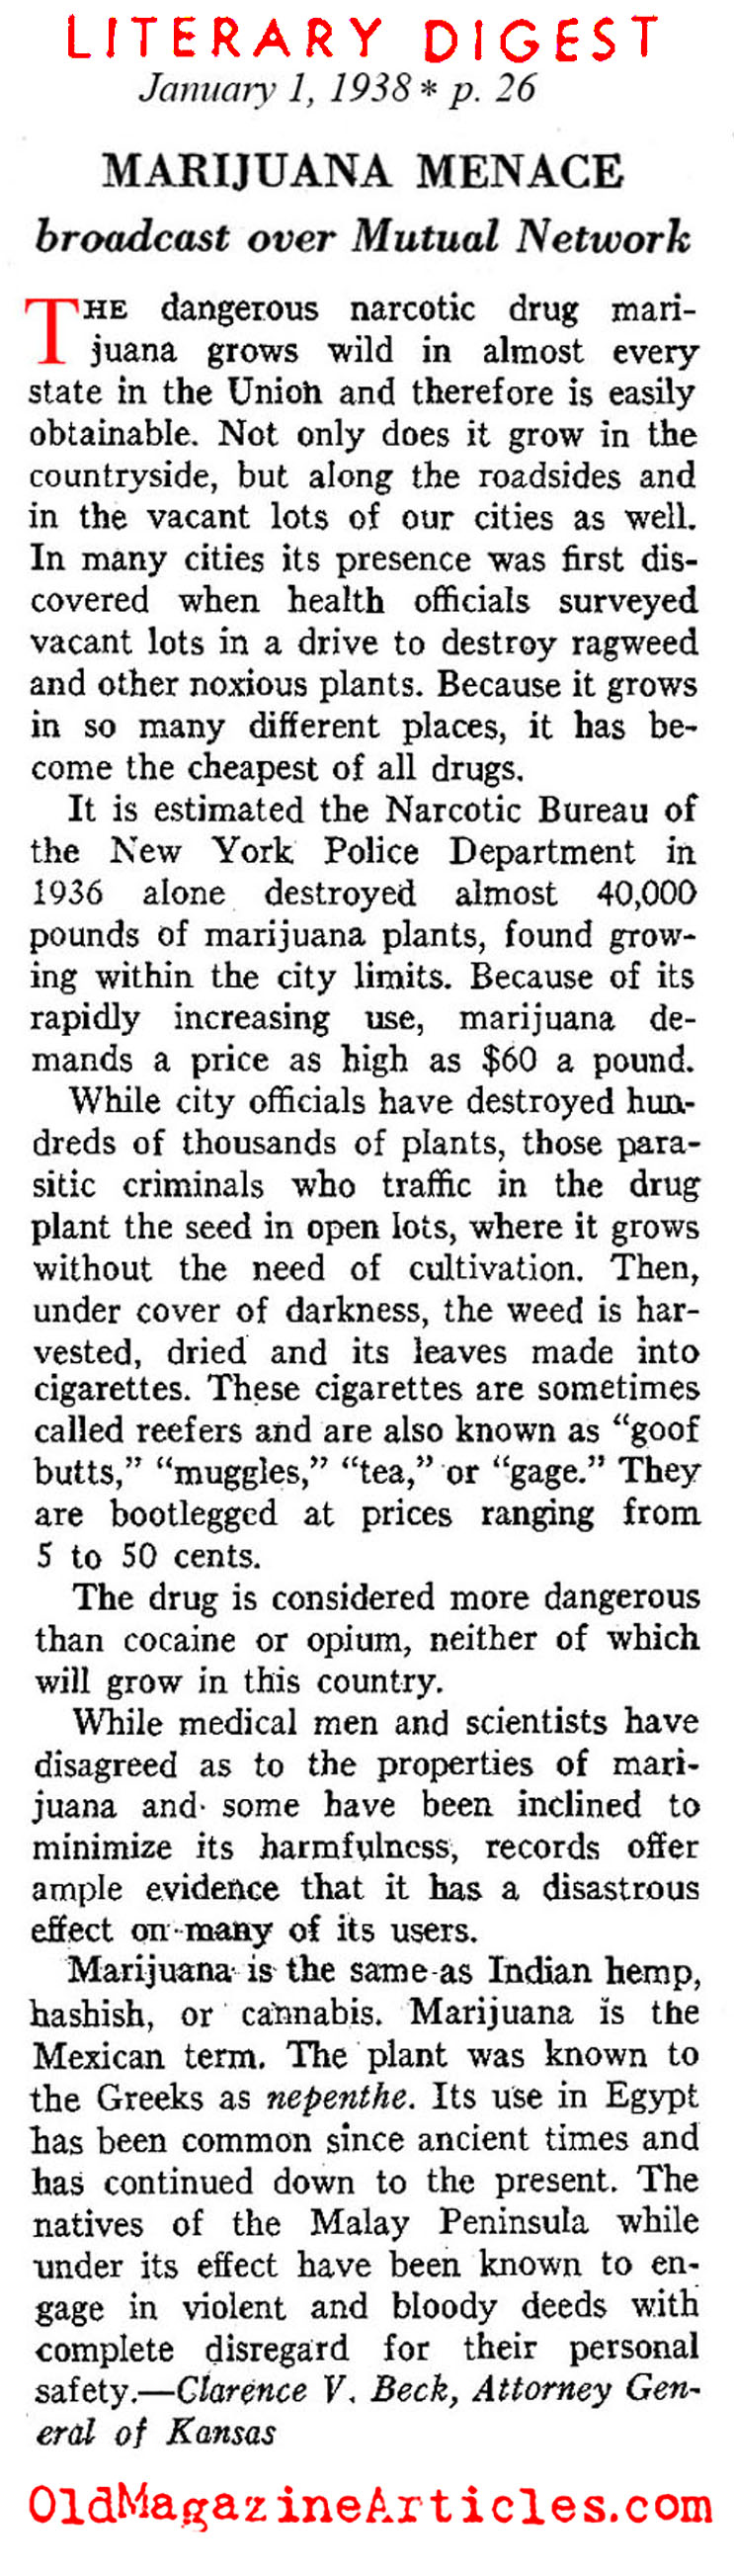 Marijuana in the Thirties (Literary Digest, 1938)